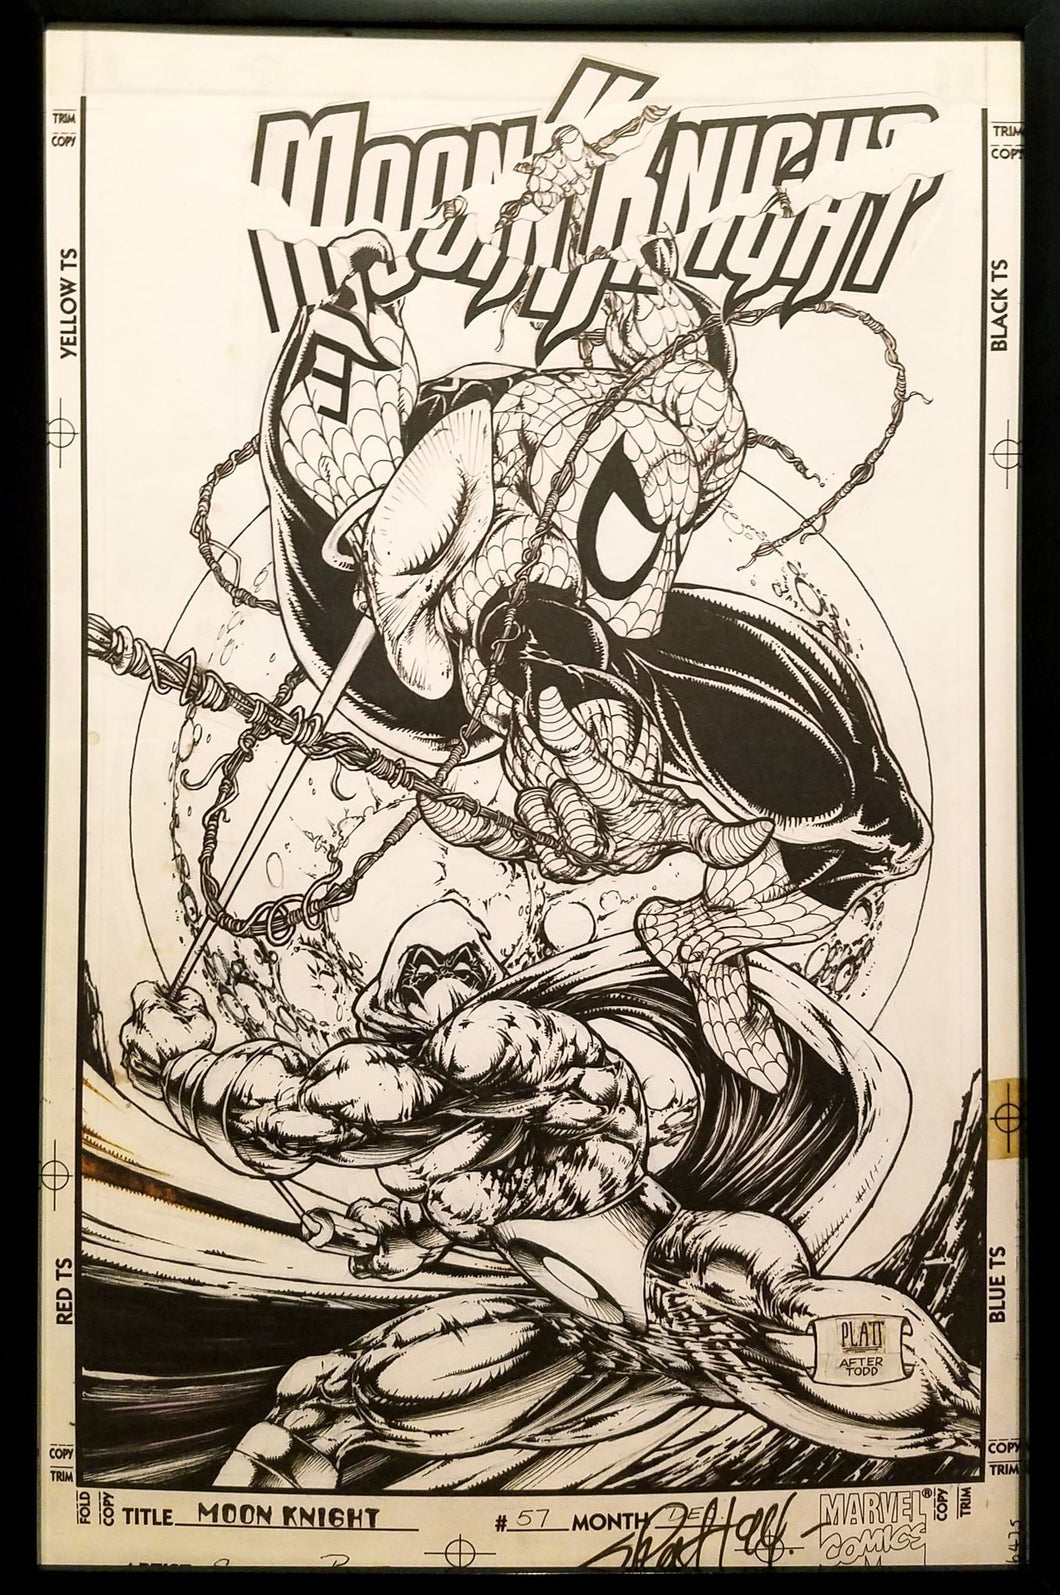 Moon Knight #57 by Stephen Platt 11x17 FRAMED Original Art Poster Marvel Comics